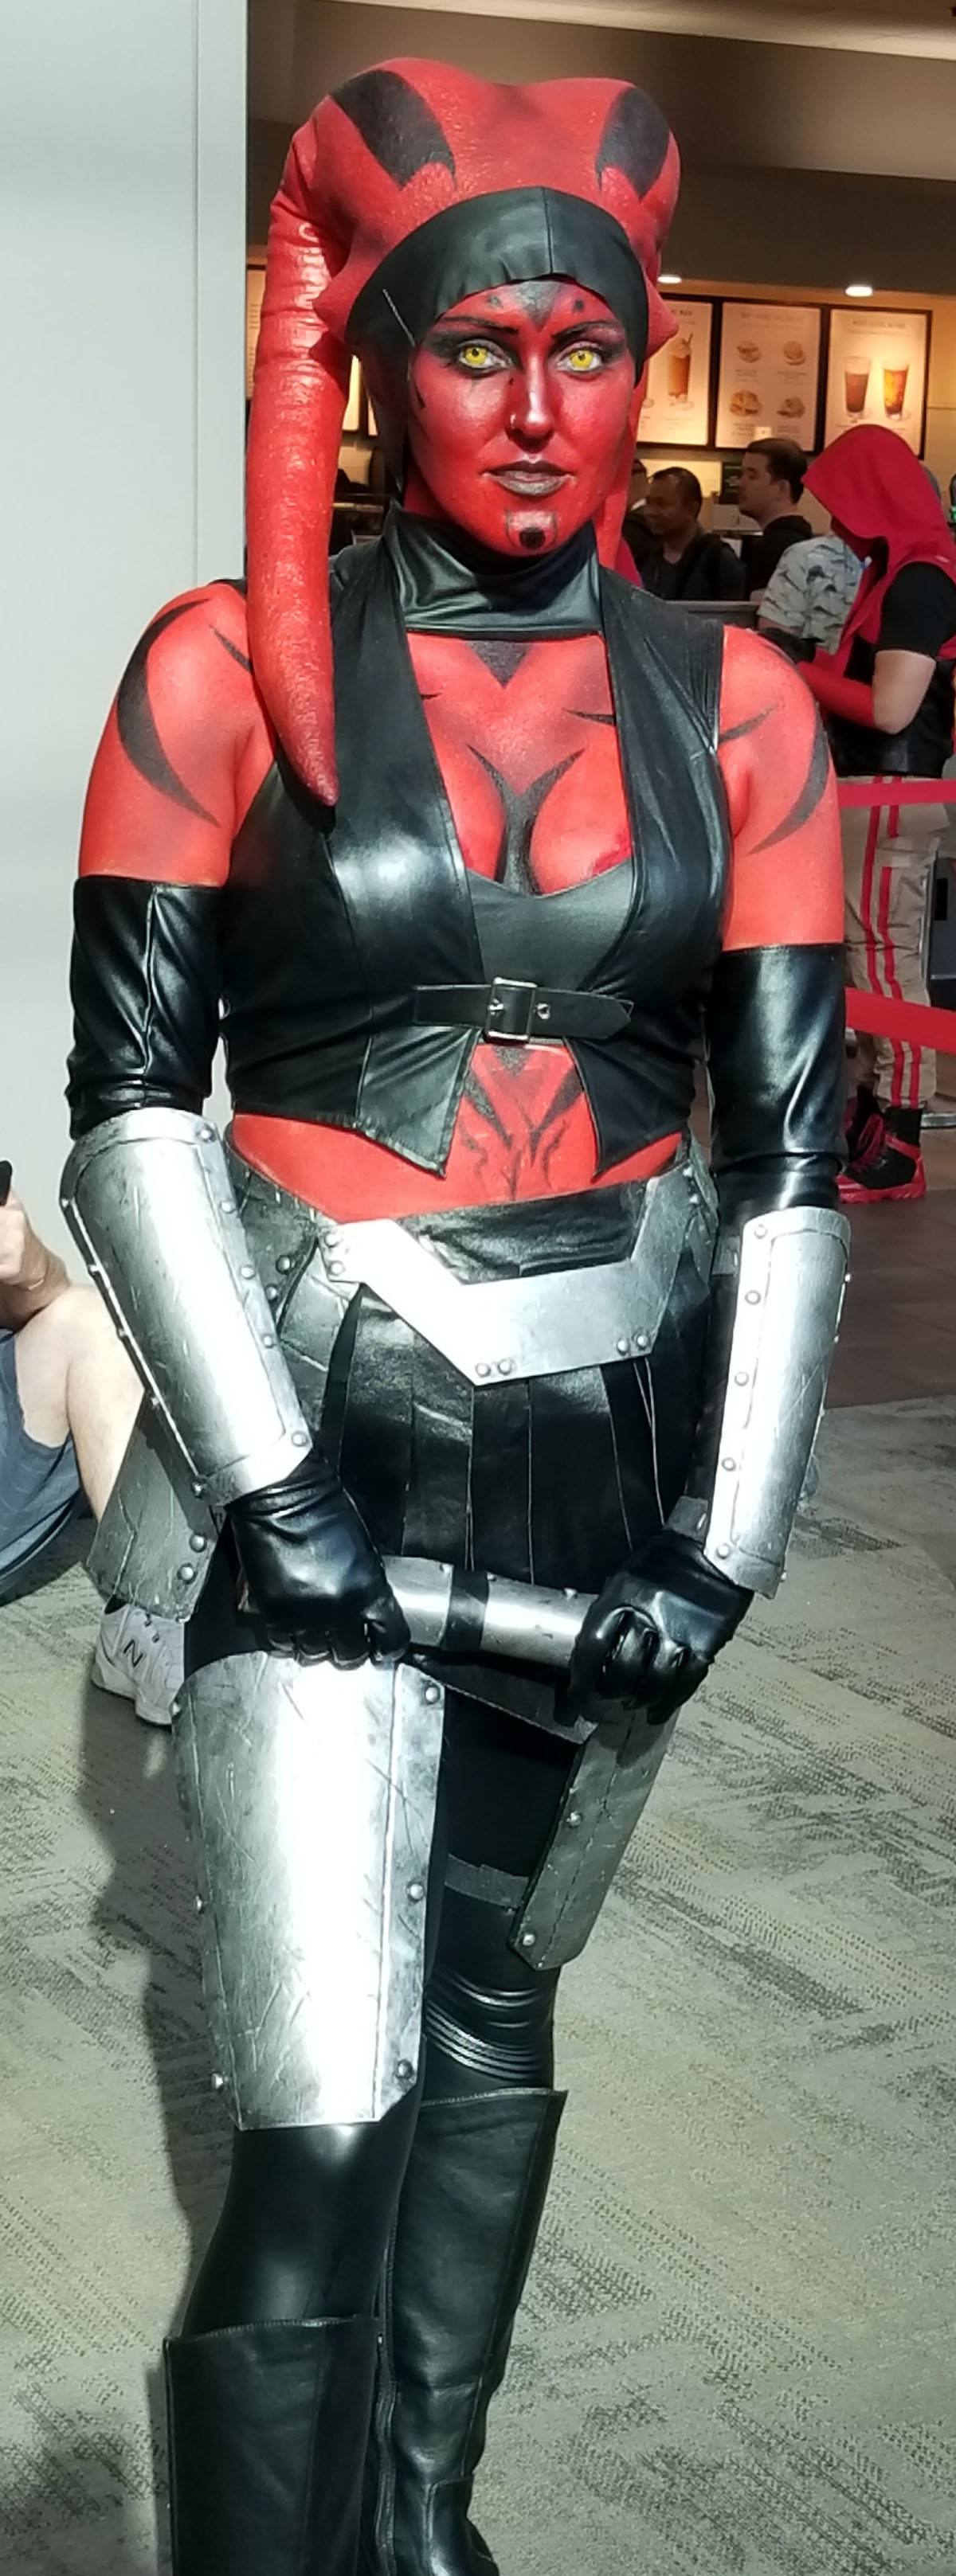 Um fã vestido de Darth Talon na Comic-Con.